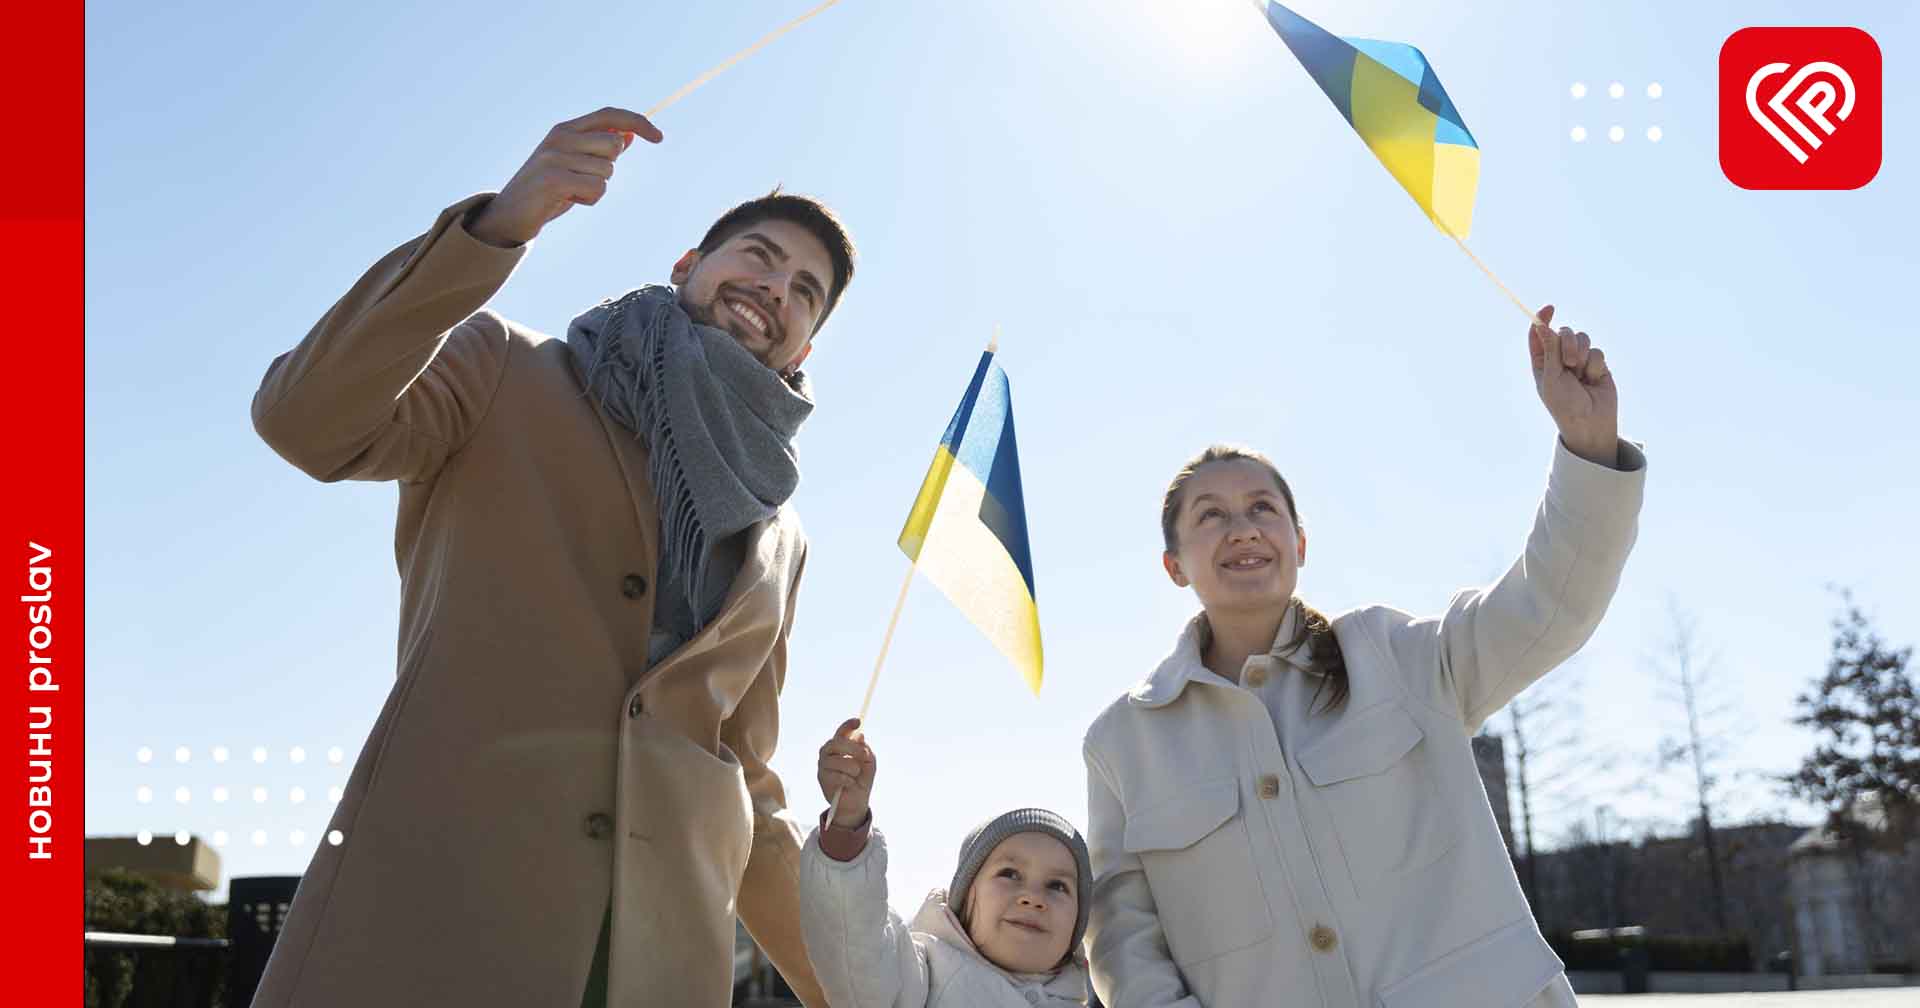 Кожен другий українець не планує своє майбутнє: дані нового дослідження групи «Рейтинг»